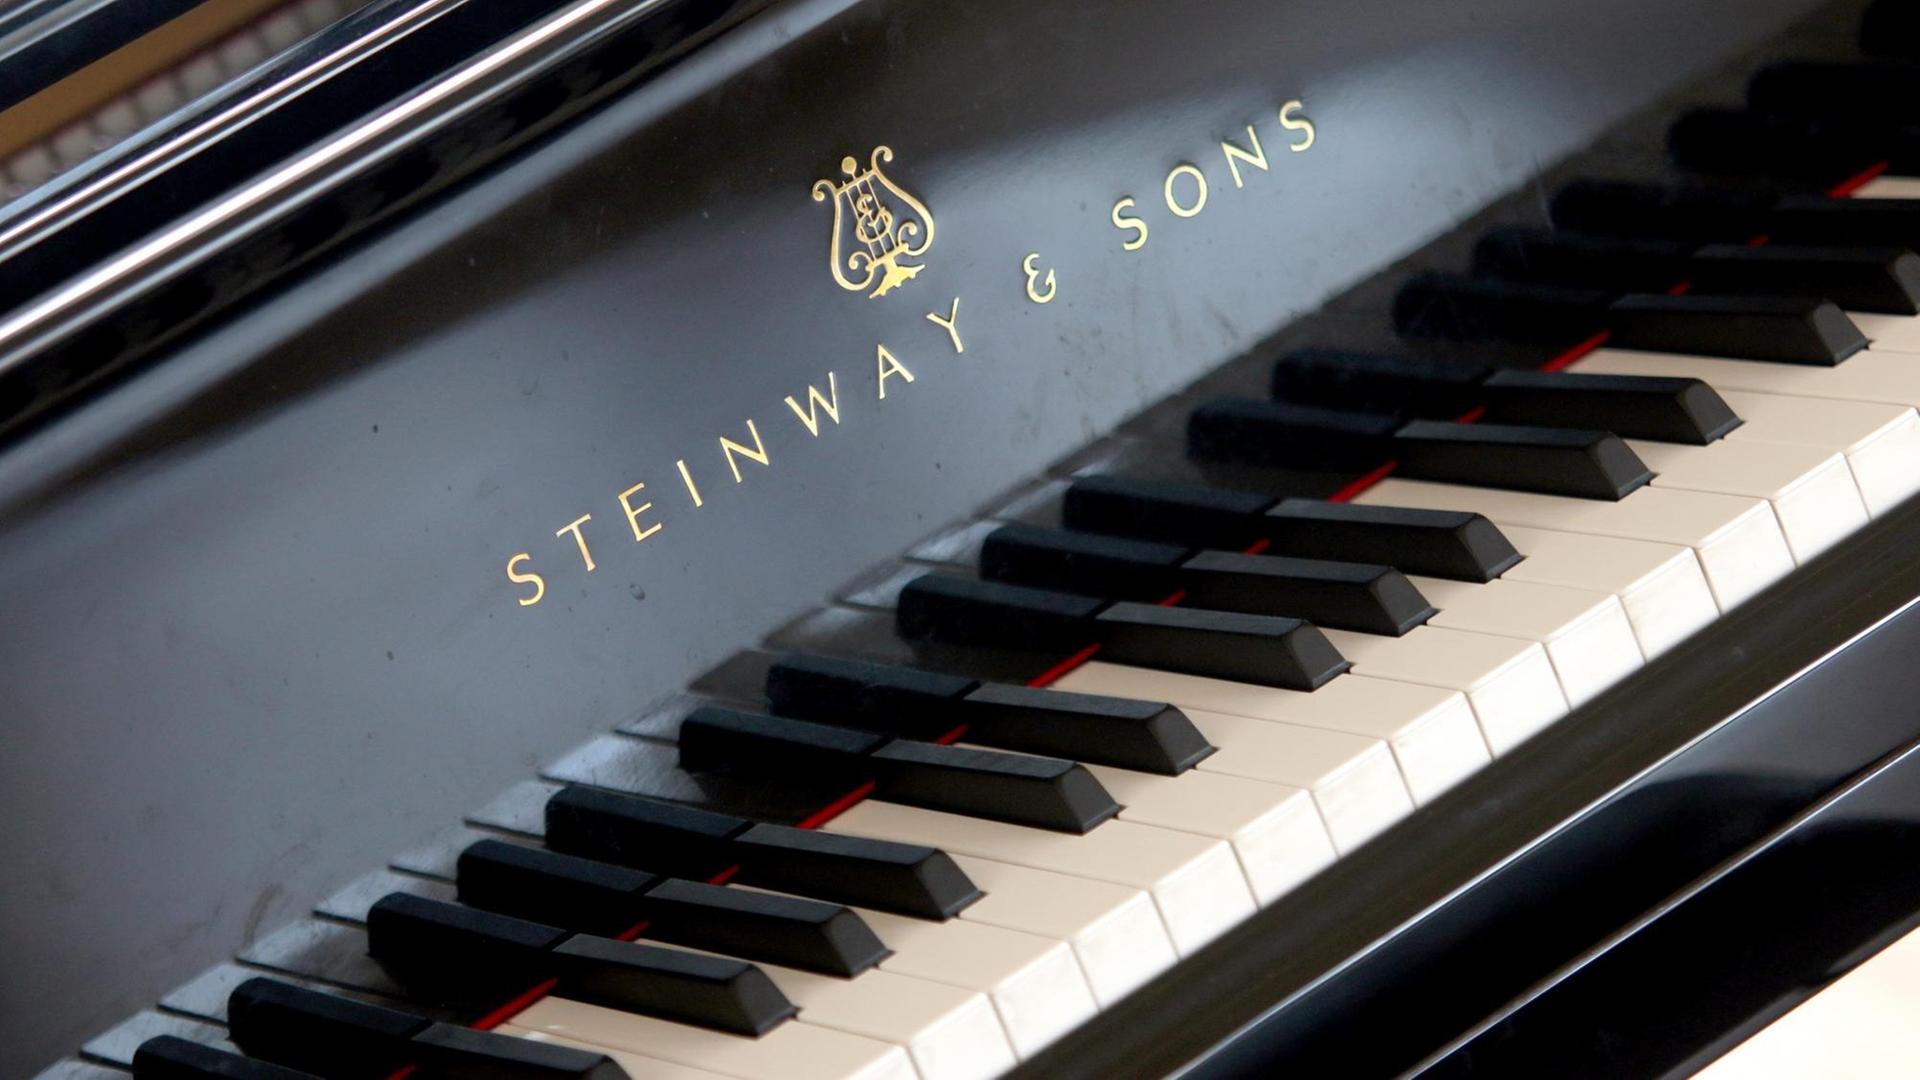 09.04.2018, Sachsen-Anhalt, Wernigerode: Ein Flügel der Marke Steinway & Sons steht in einem Konzertsaal in Wernigerode.